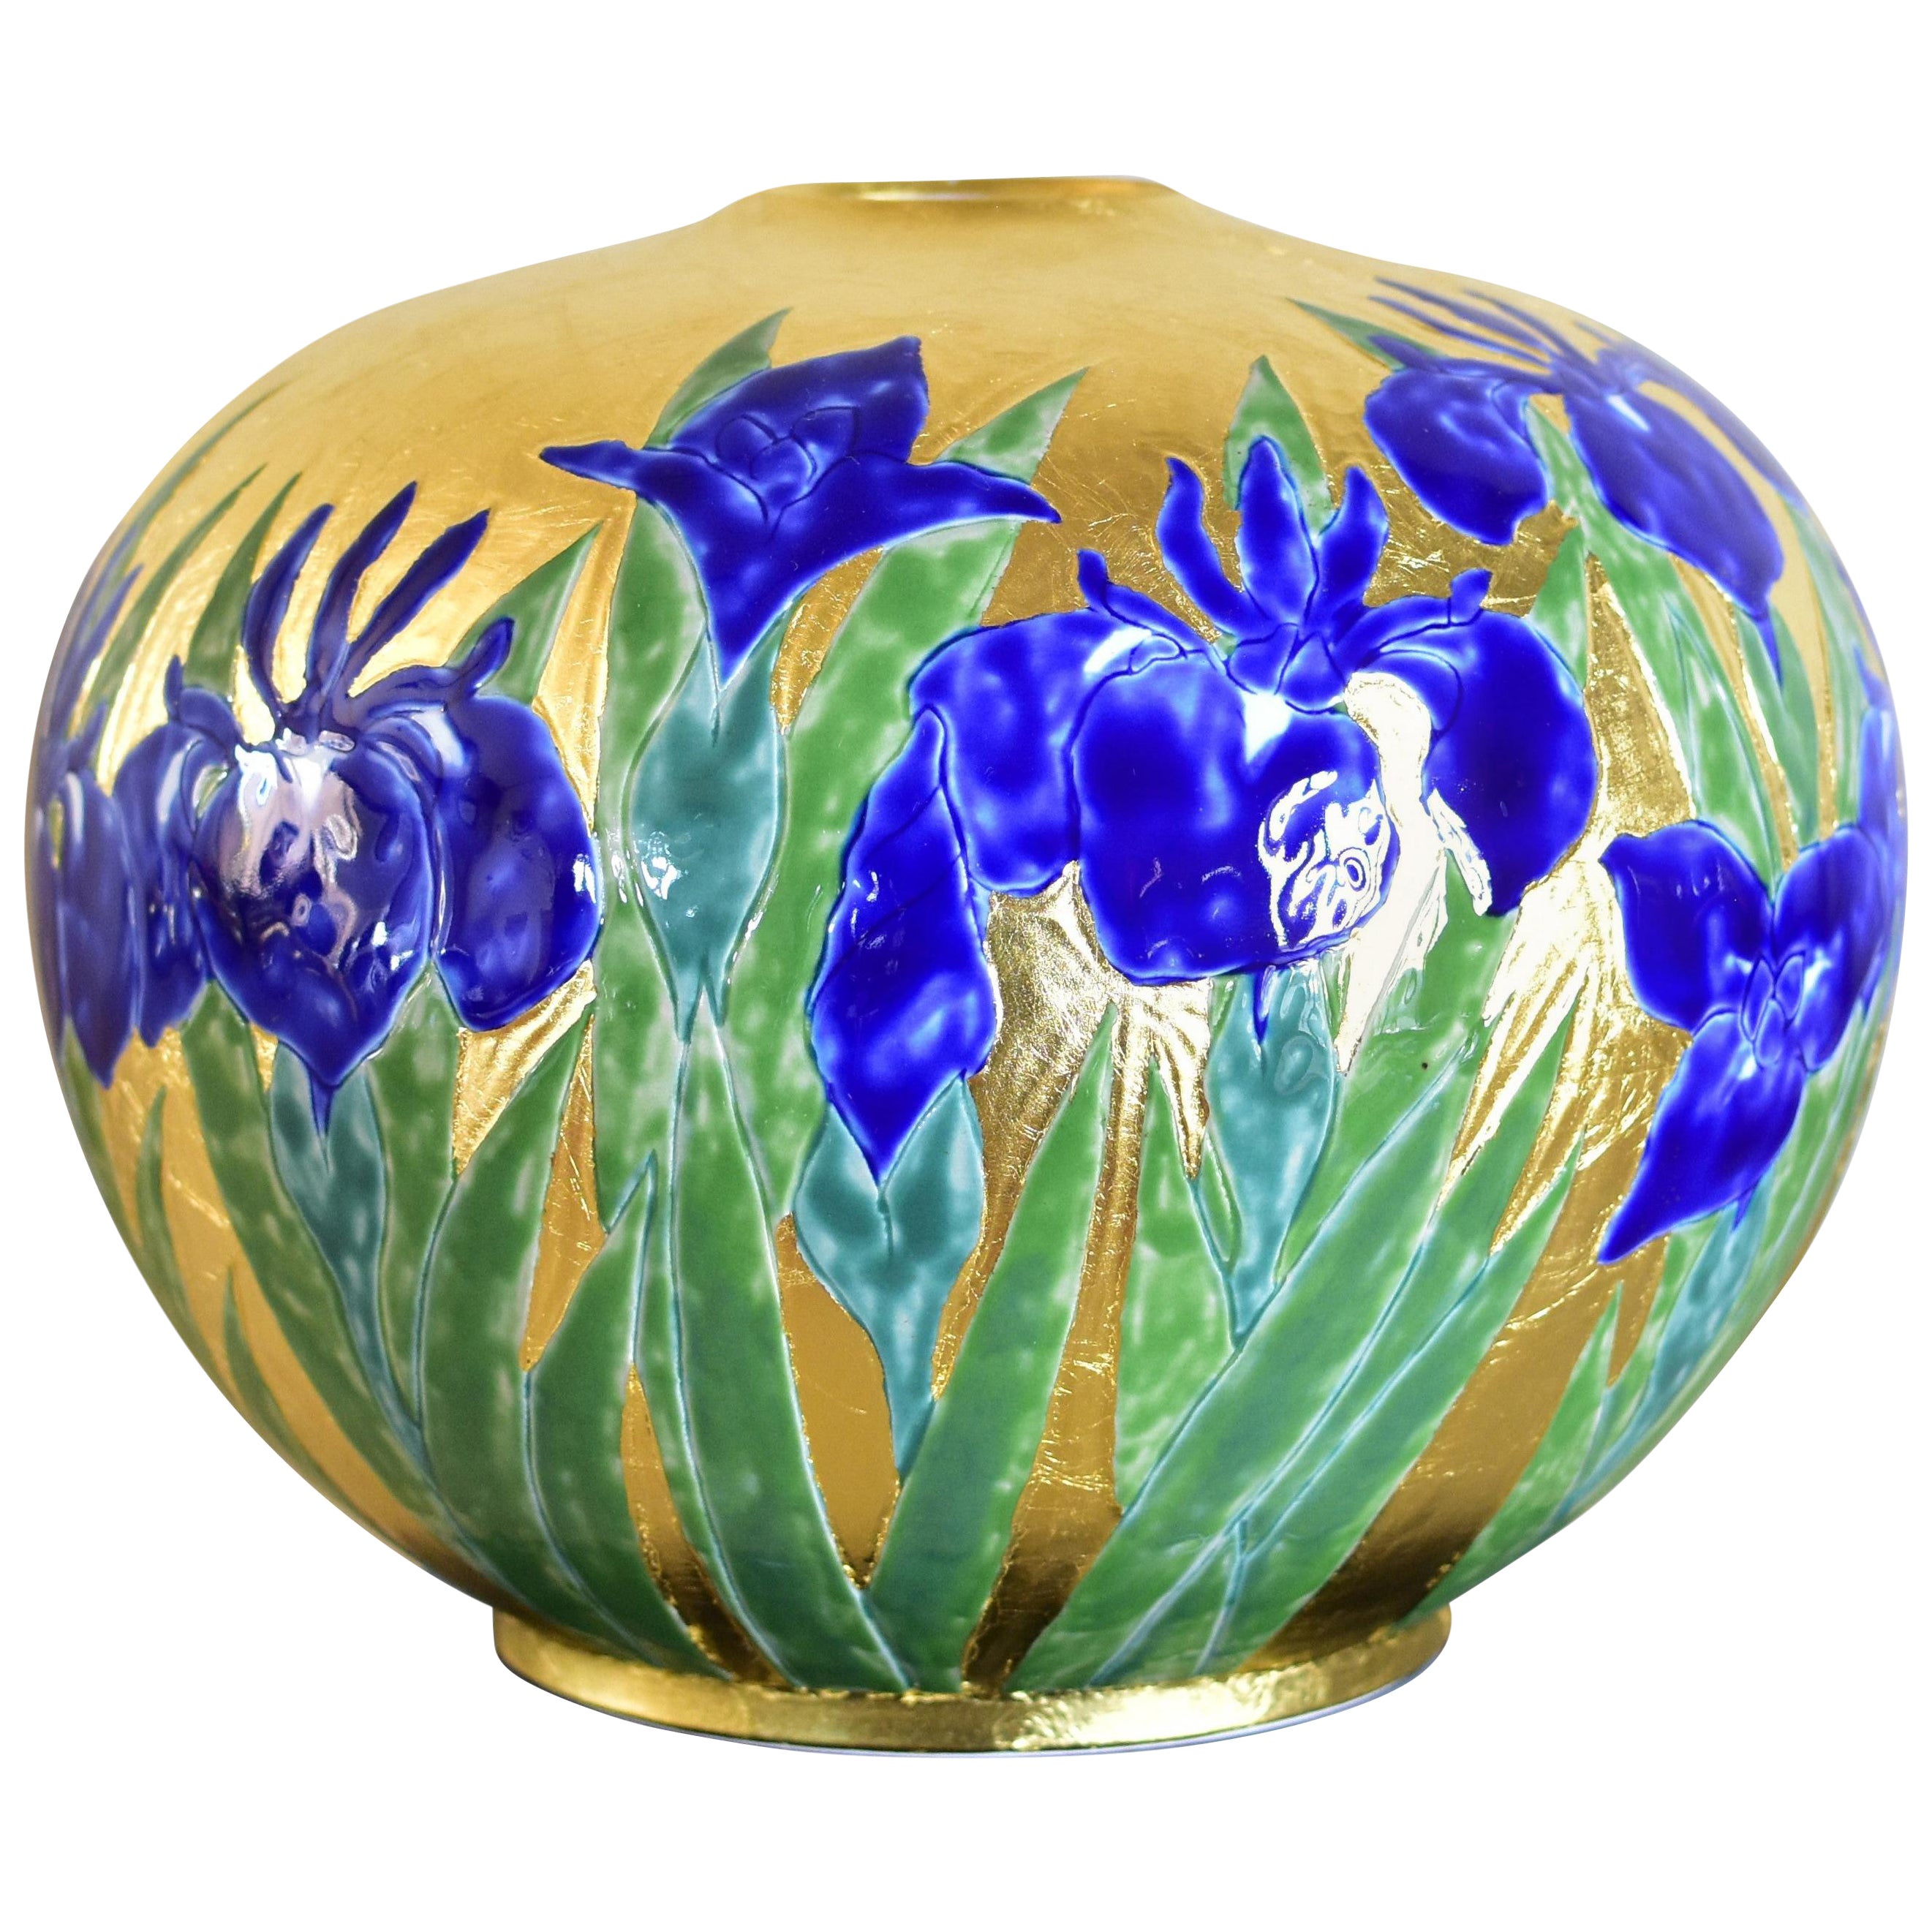 Japanese Contemporary Gold Leaf Green Blue Porcelain Vase by Master Artist, 1